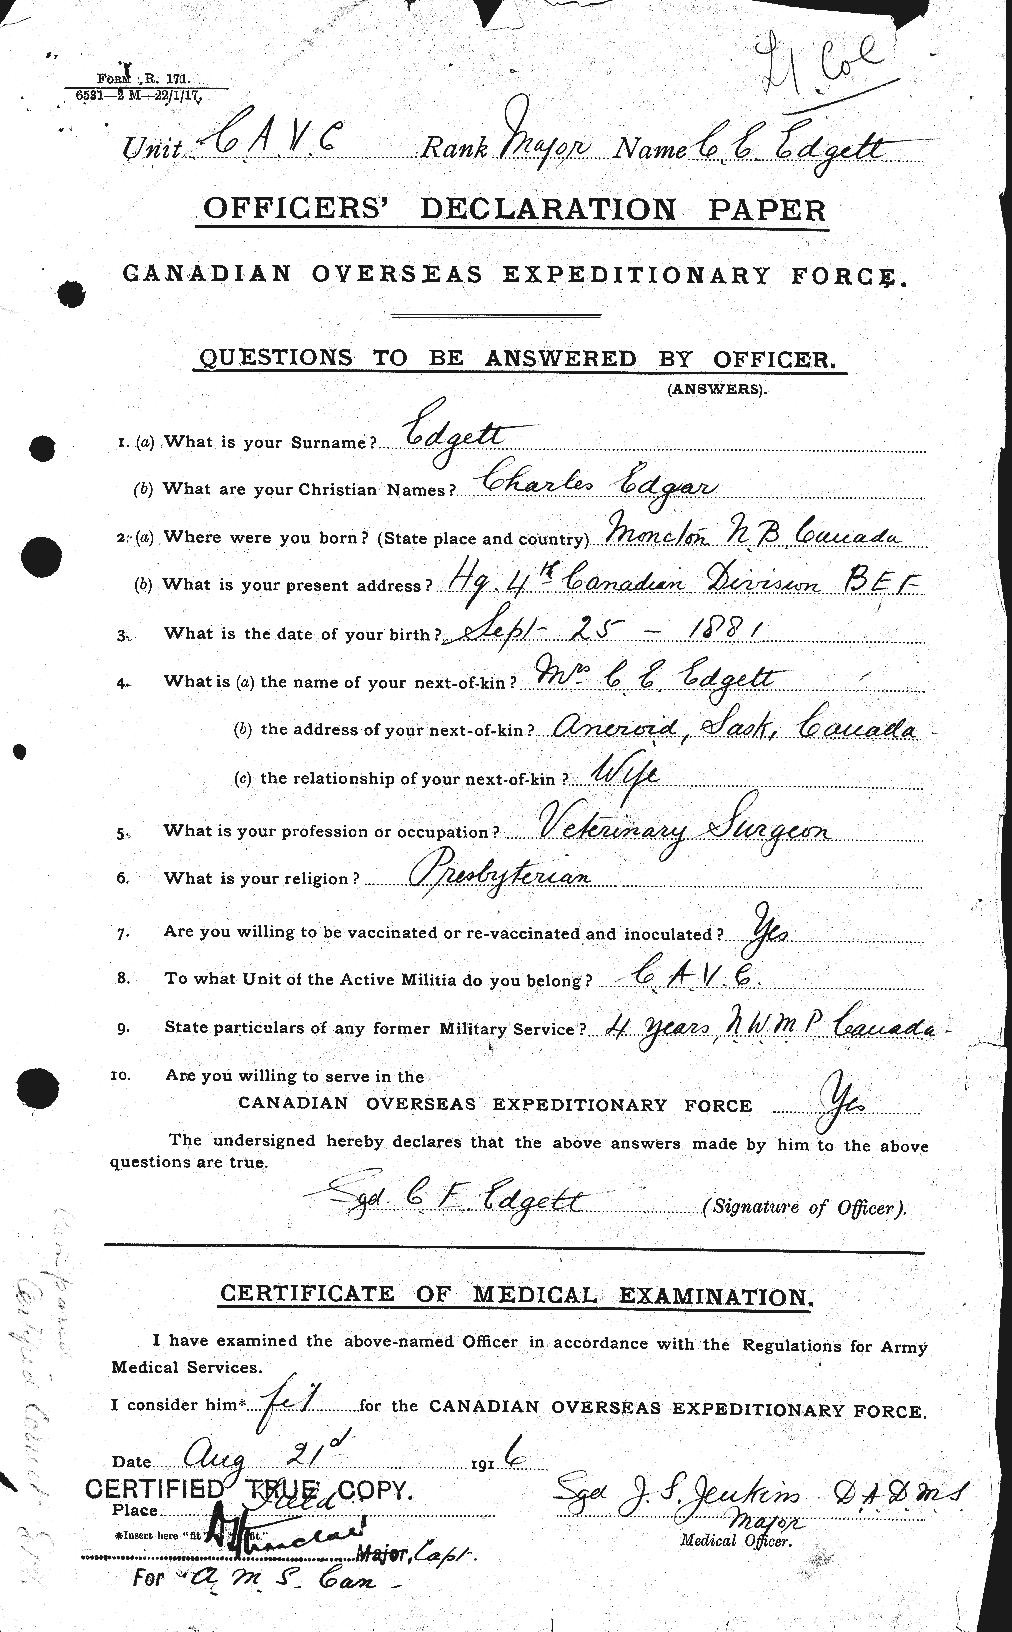 Dossiers du Personnel de la Première Guerre mondiale - CEC 308292a